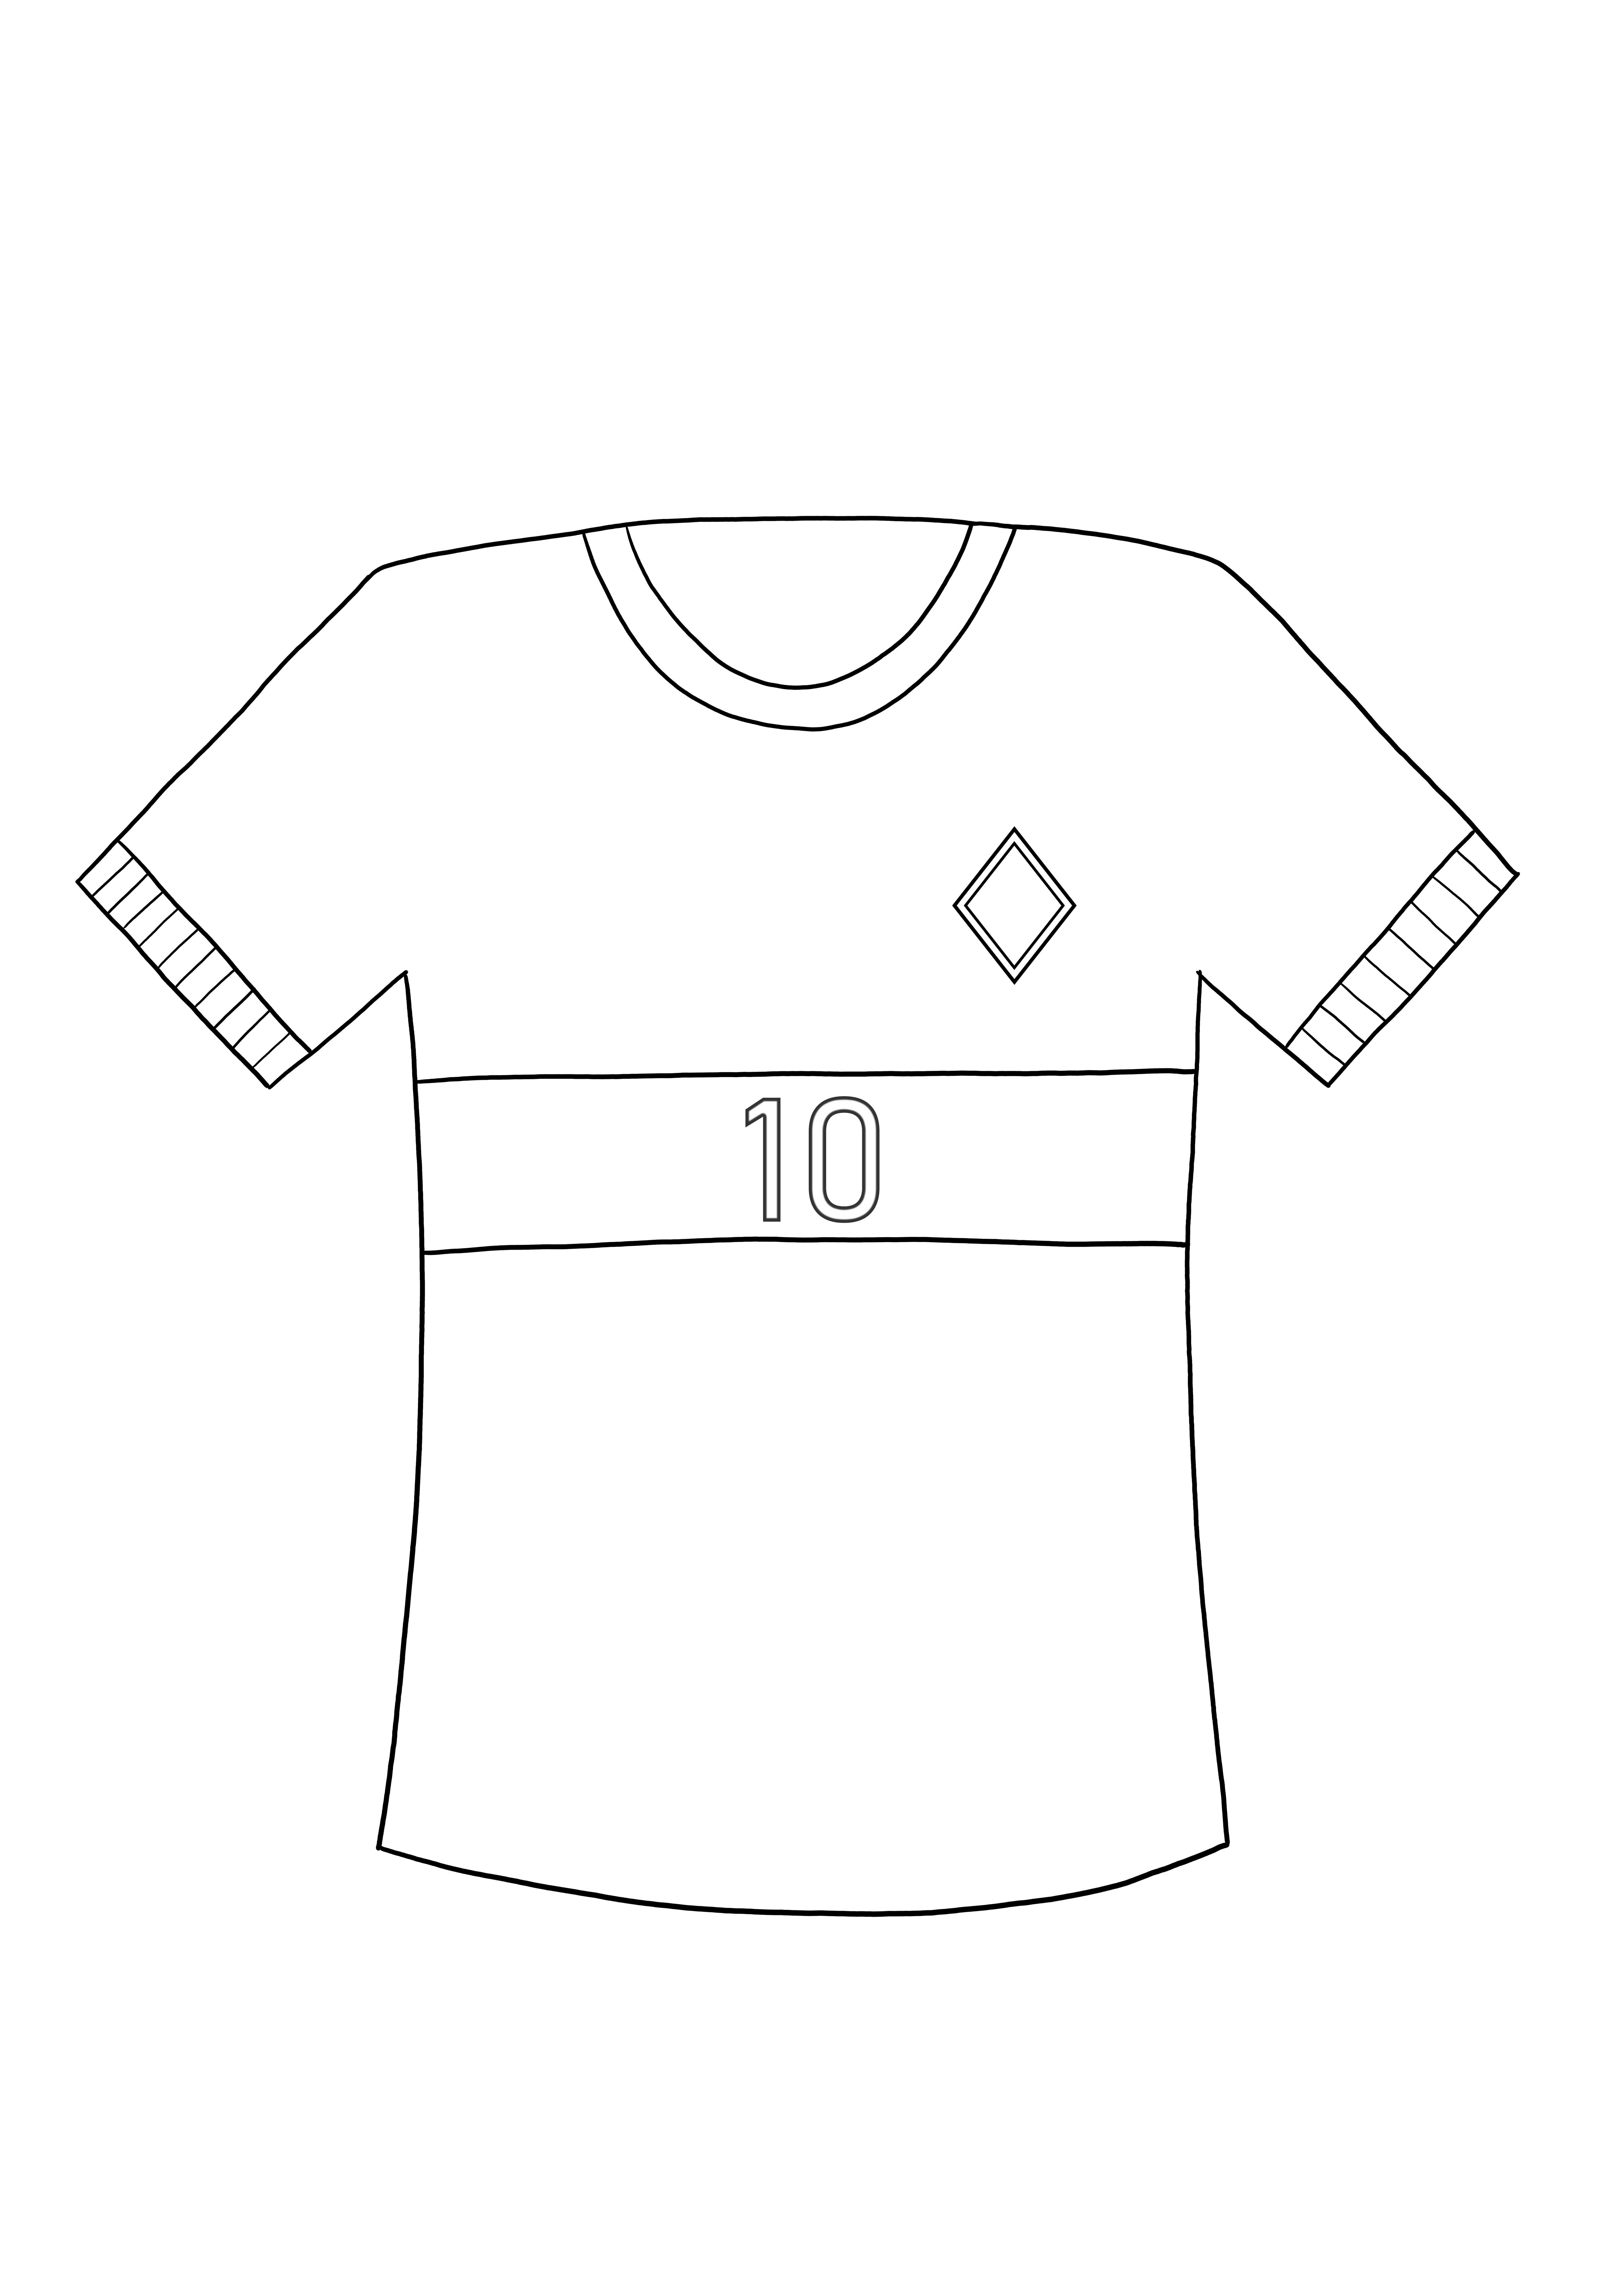 Koszulka piłkarska-edukacyjna kolorowanka do bezpłatnego drukowania